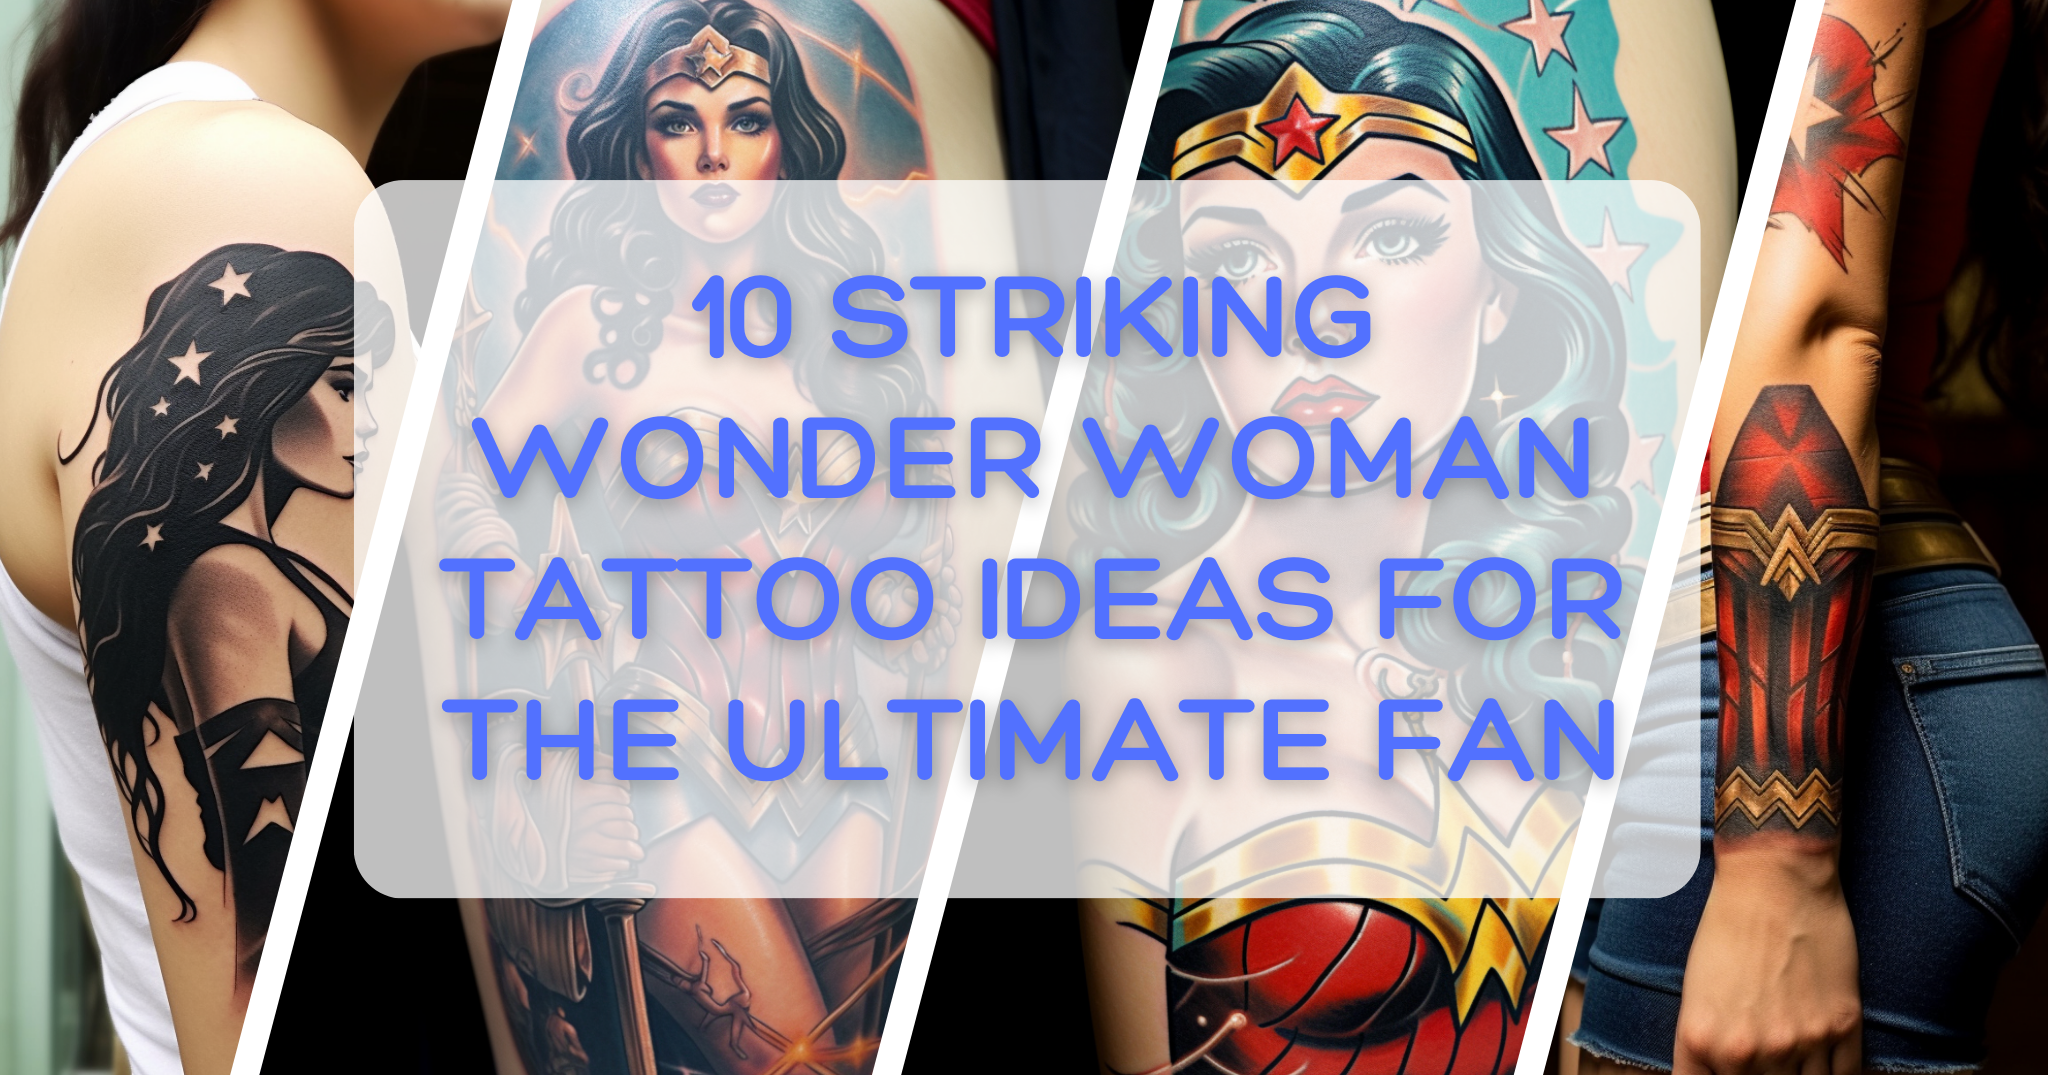 10 Striking Wonder Woman Tattoo Ideas for the Ultimate Fan